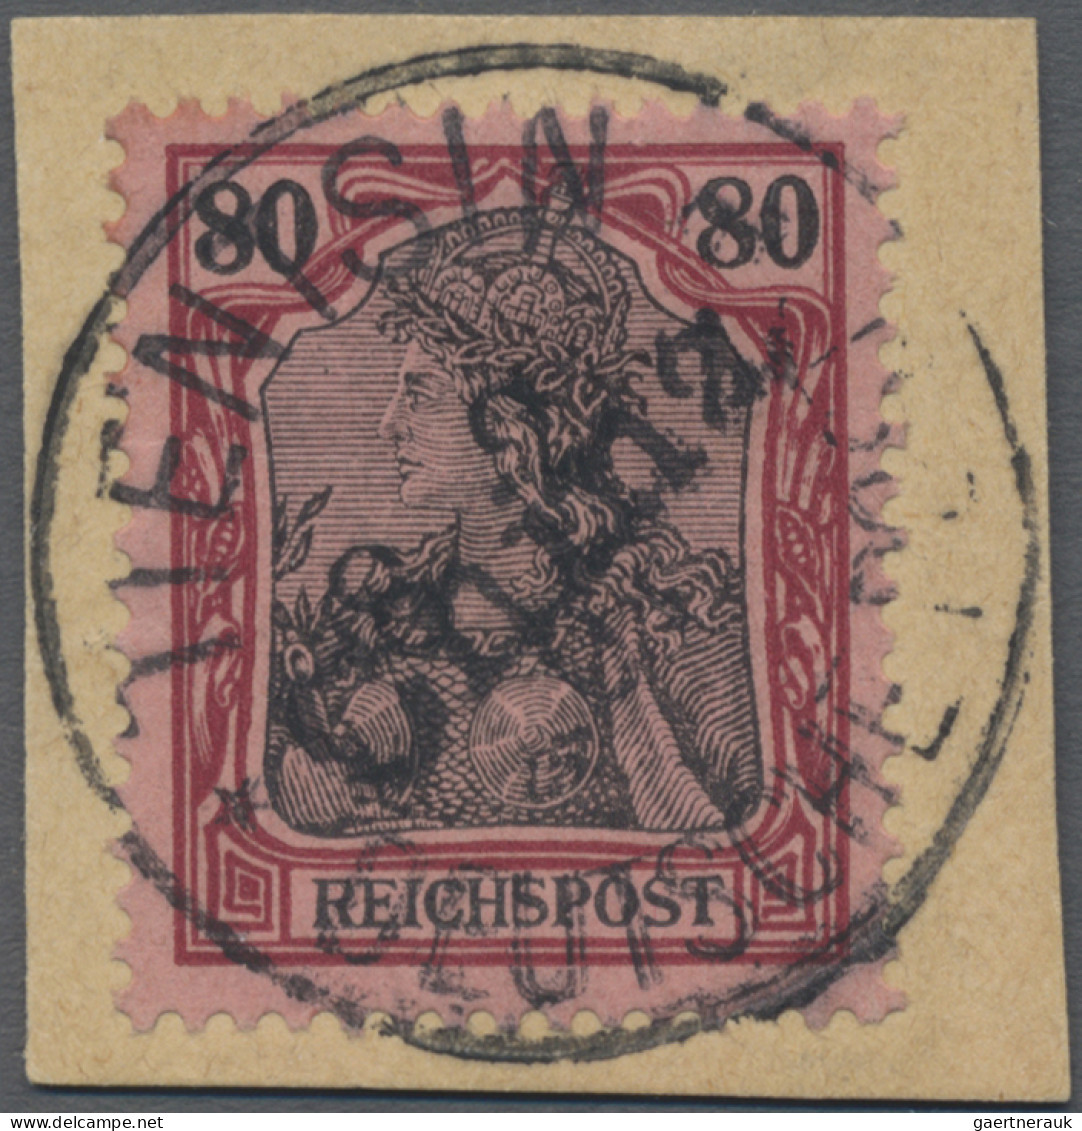 Deutsche Post In China: 1901, 80 Pf Germania Reichspost Mit Handstempelaufdruck, - China (offices)